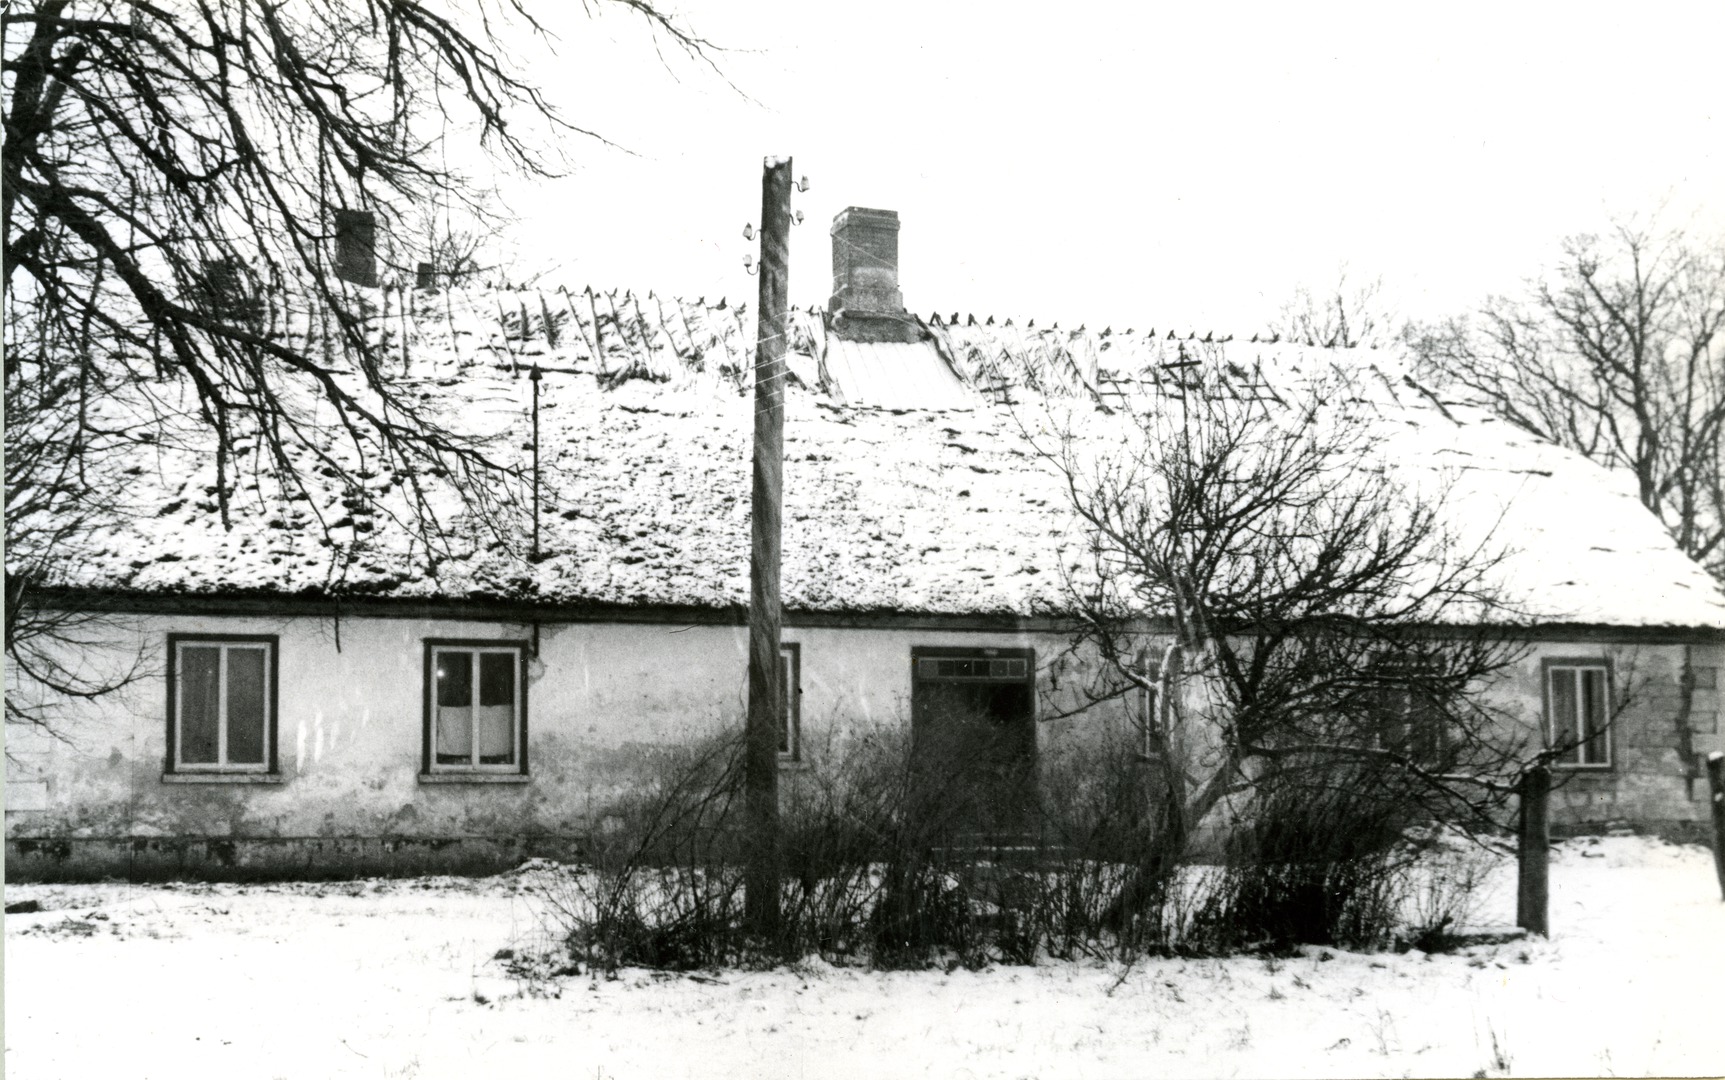 Kaarma county school and köstrimaja building (built in 1863) in Saaremaa